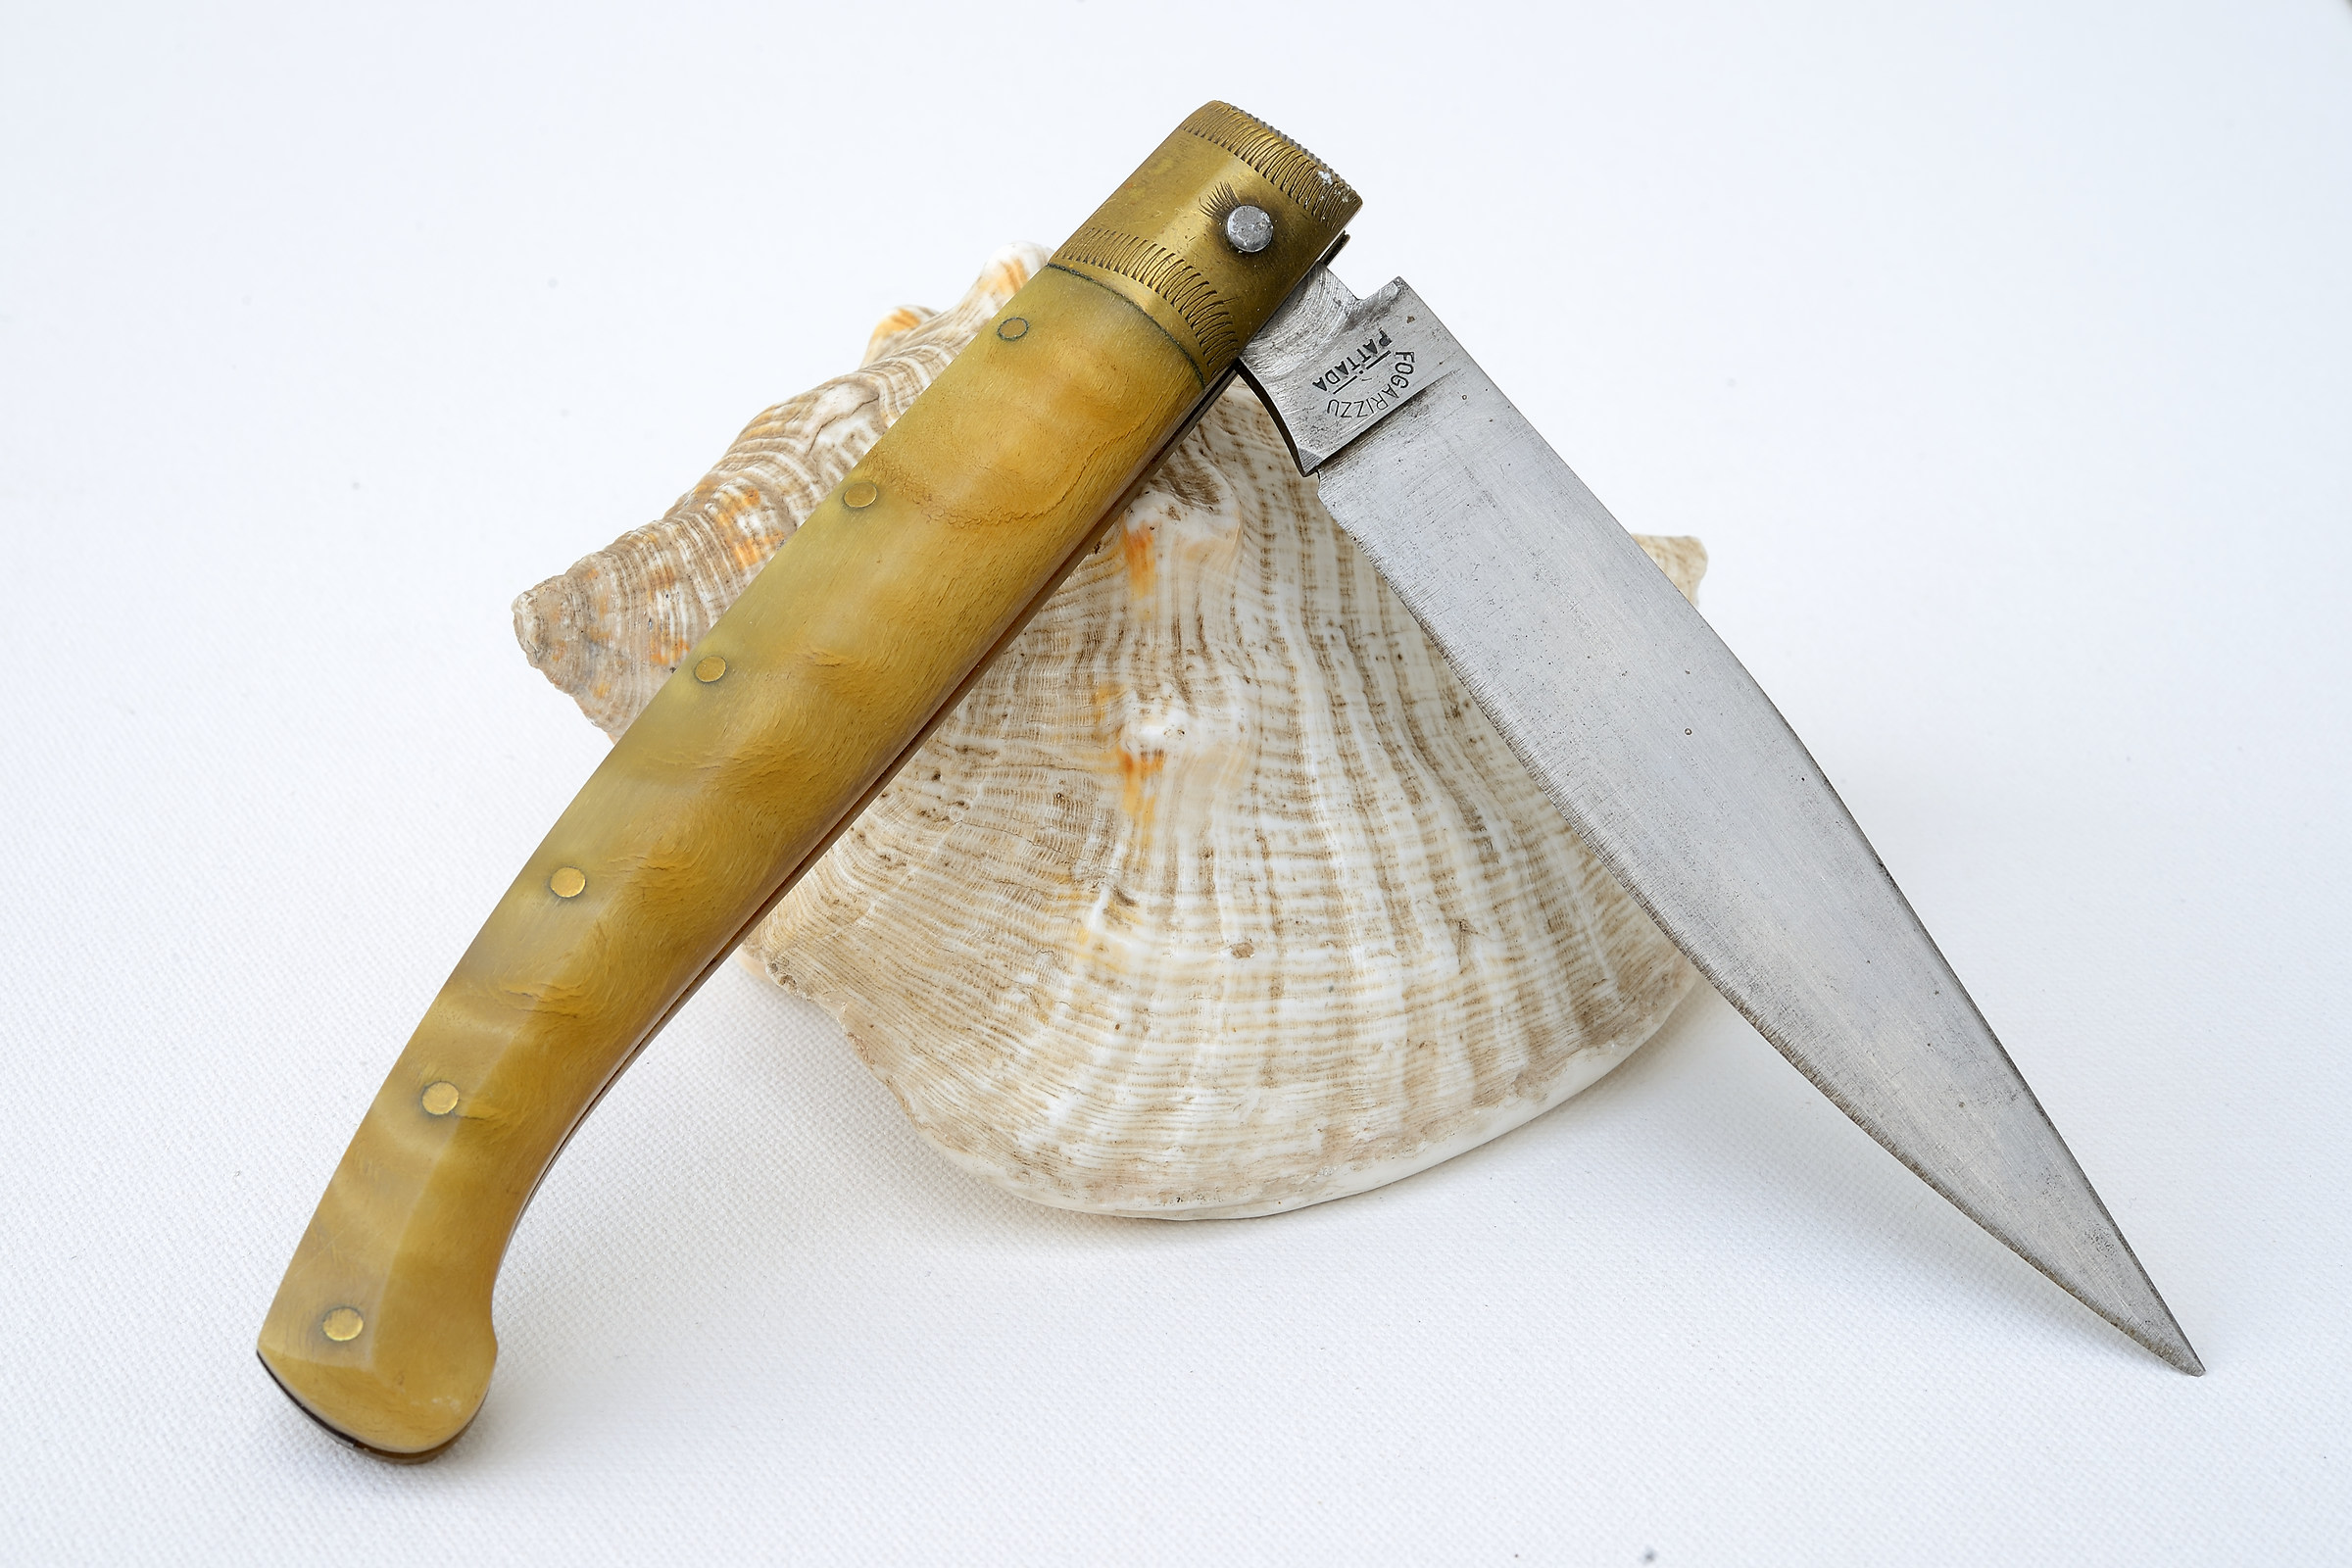 The Sardinian knife...